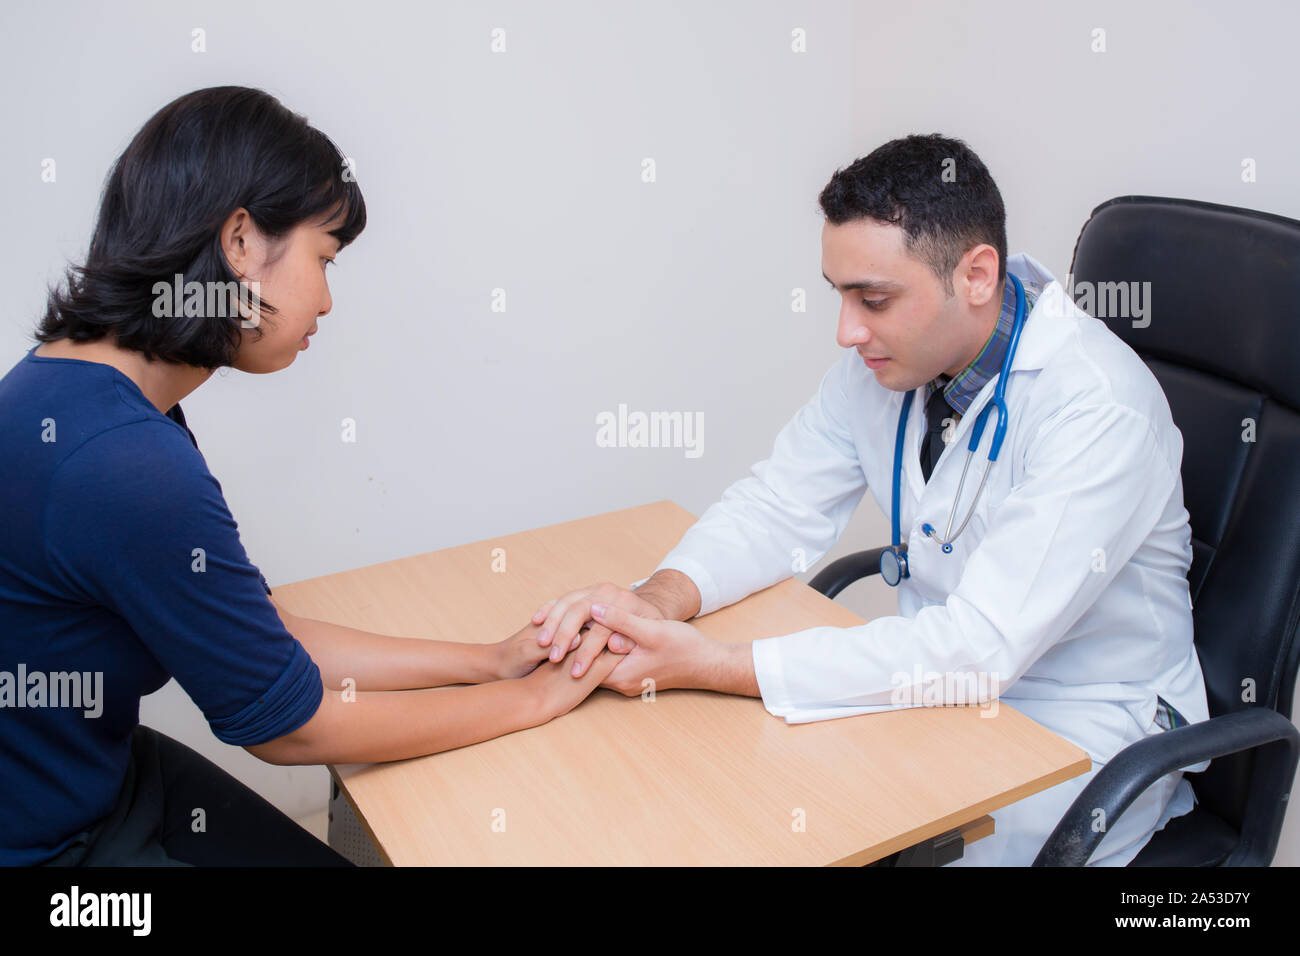 Friendly médecin homme main tenant la main du patient assis au bureau pour l'encouragement - empathie - encourager et soutenir alors que l'examen médical. Banque D'Images